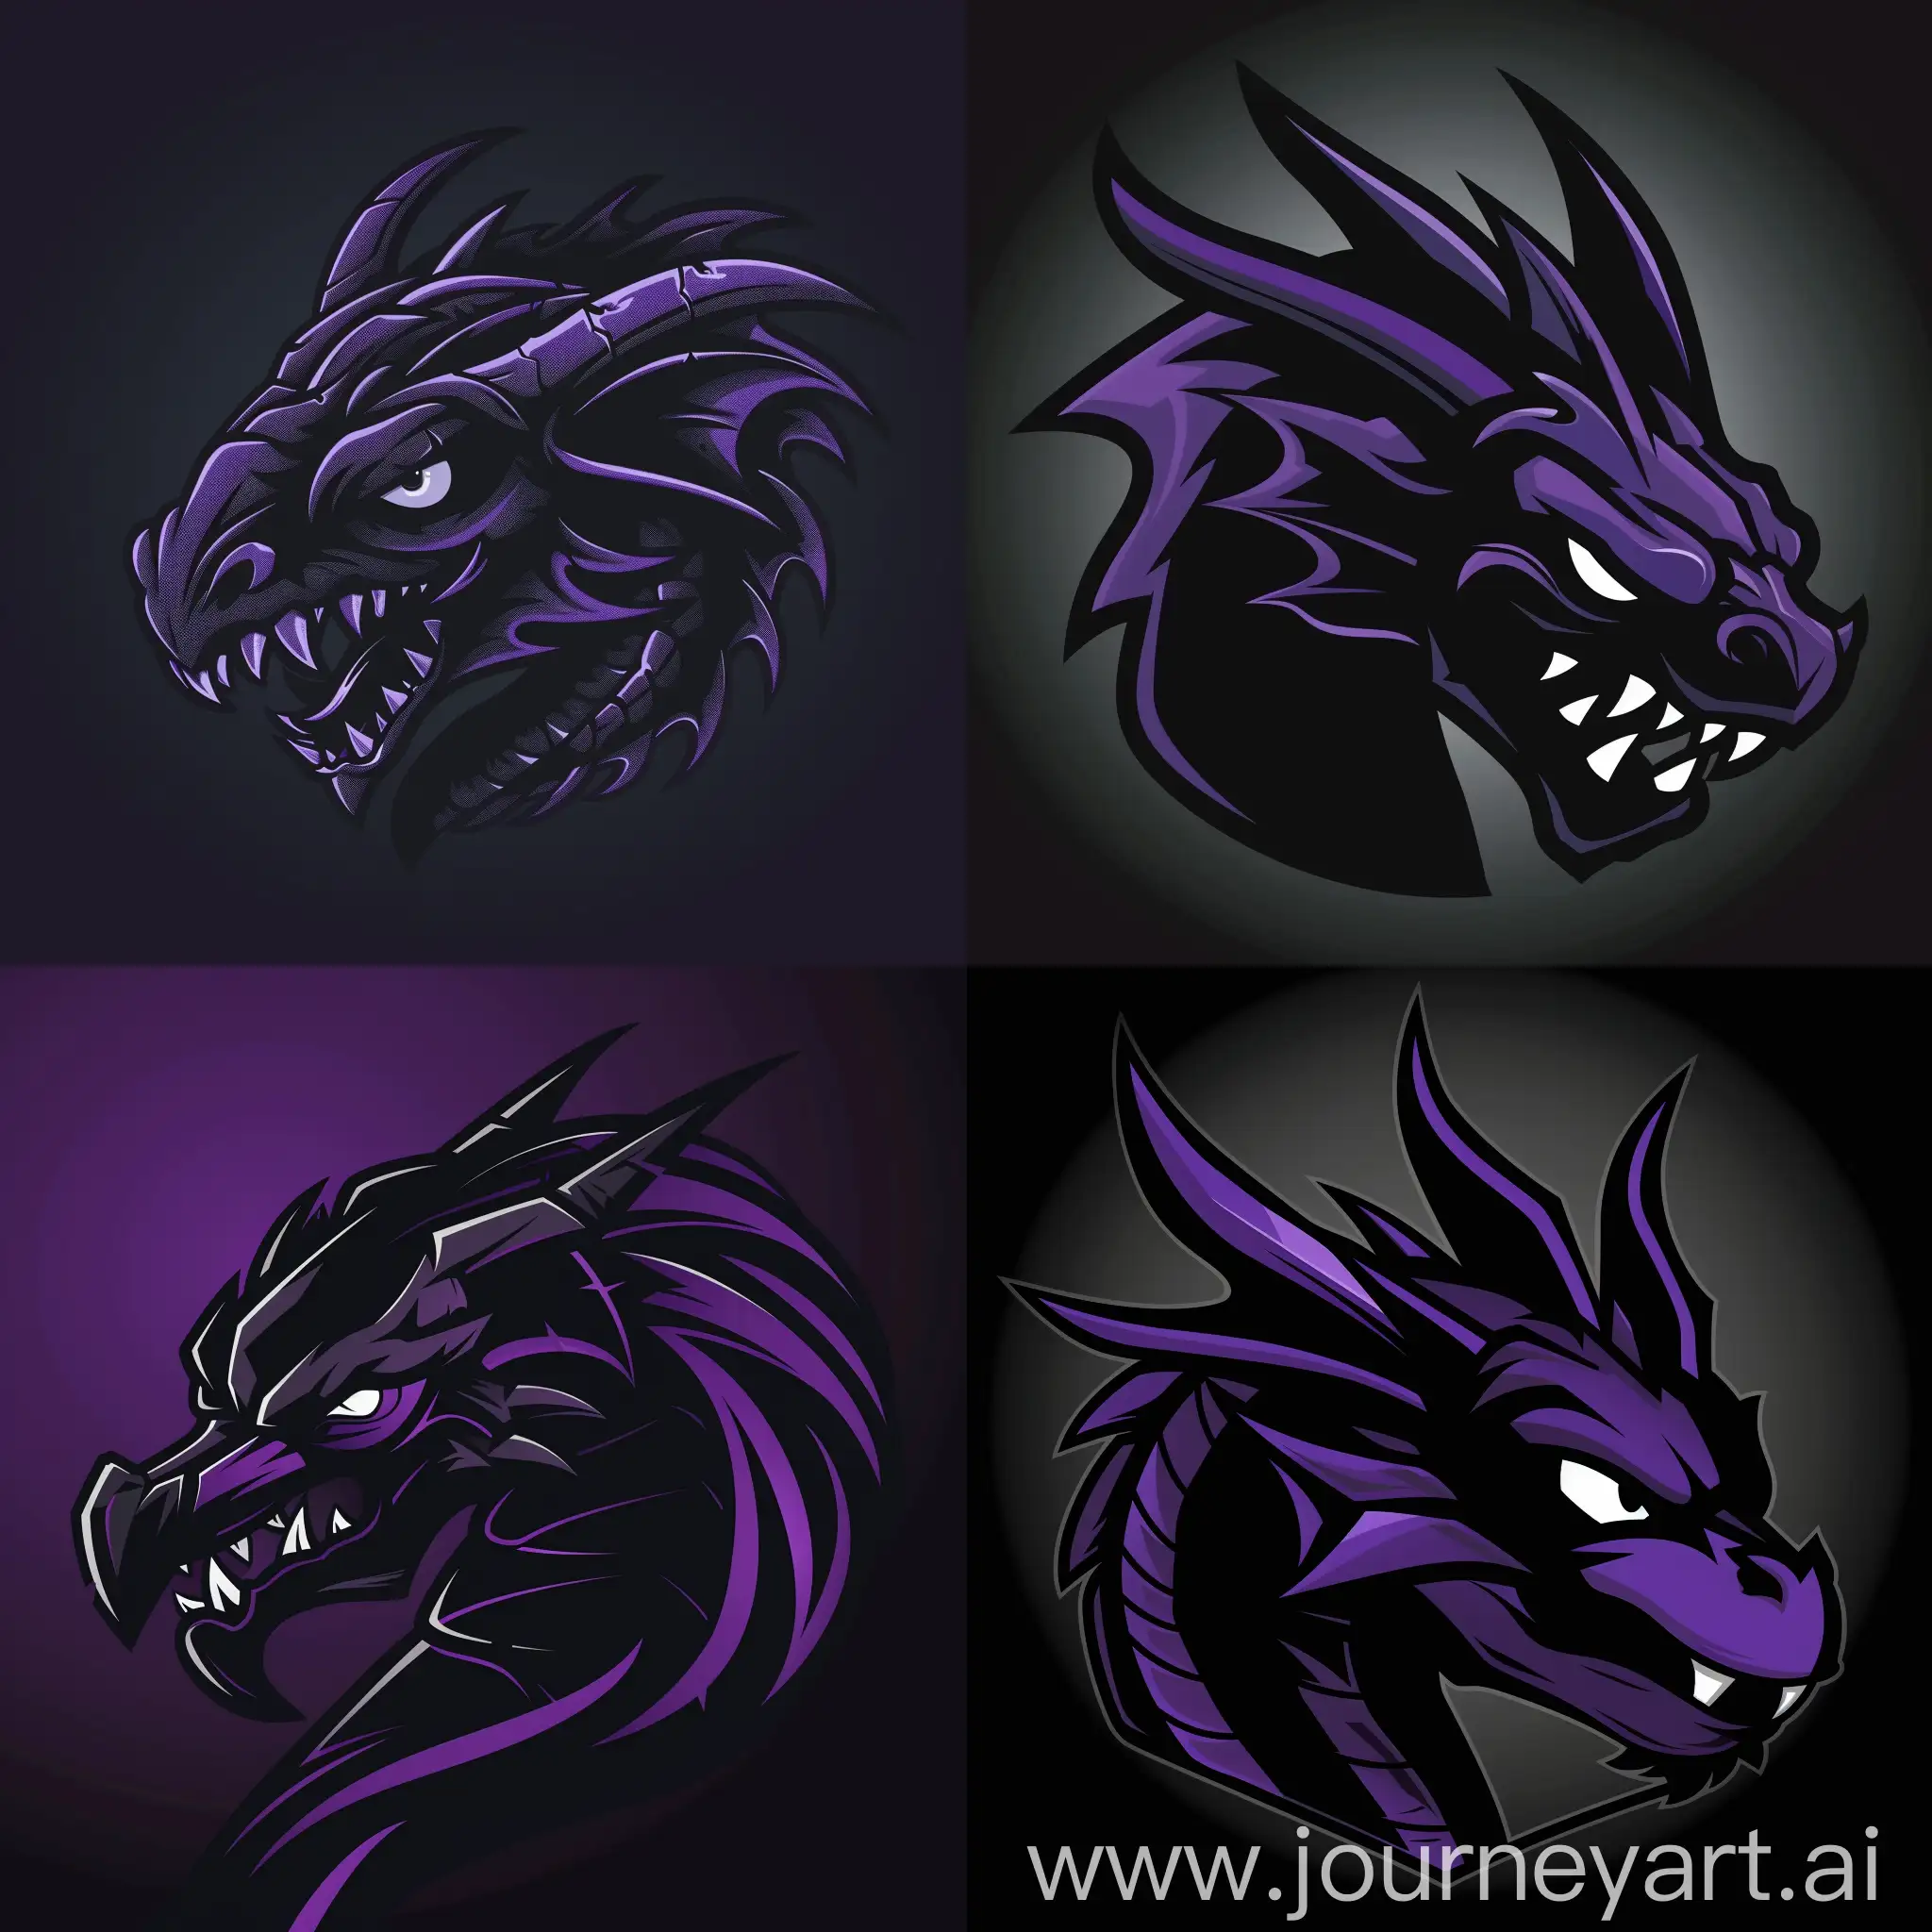 Киберспортивный логотип, 2D, черно-фиолетовая голова дракона в стиле минимализма, голова дракона с эпичным видом и с острыми ушами, зловещими глазами и грозным выражением лица, логотип в максимальной детализацией и стильным эффектом